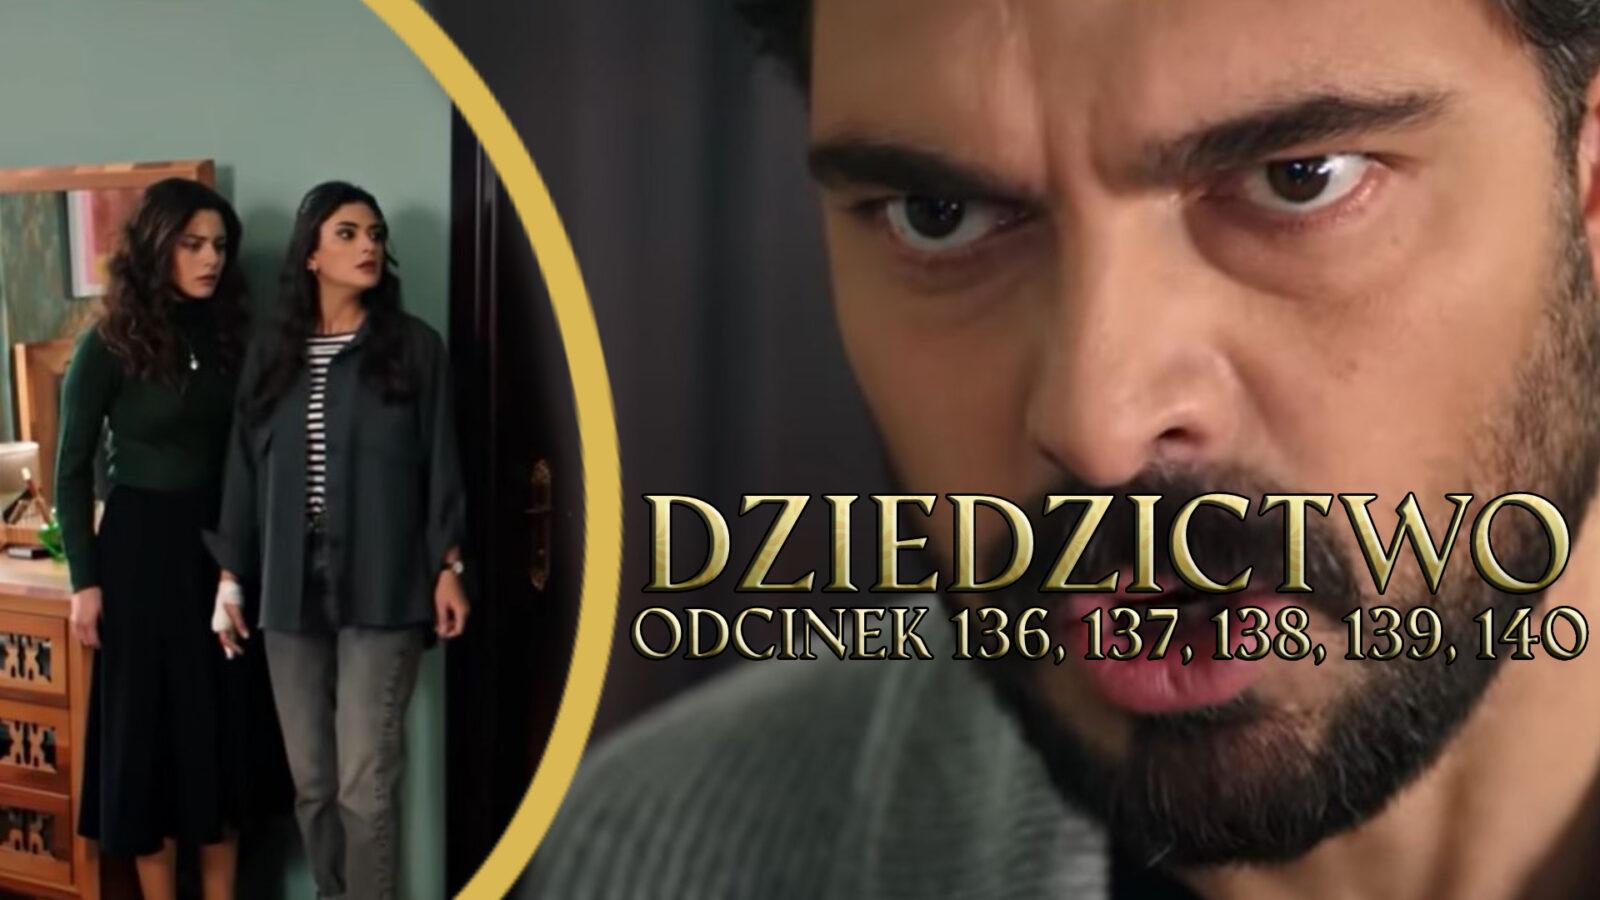 Dziedzictwo odcinki 136, 137, 138, 139, 140 online ZA DARMO – Oglądaj serial turecki DZIEDZICTWO na TVP VOD